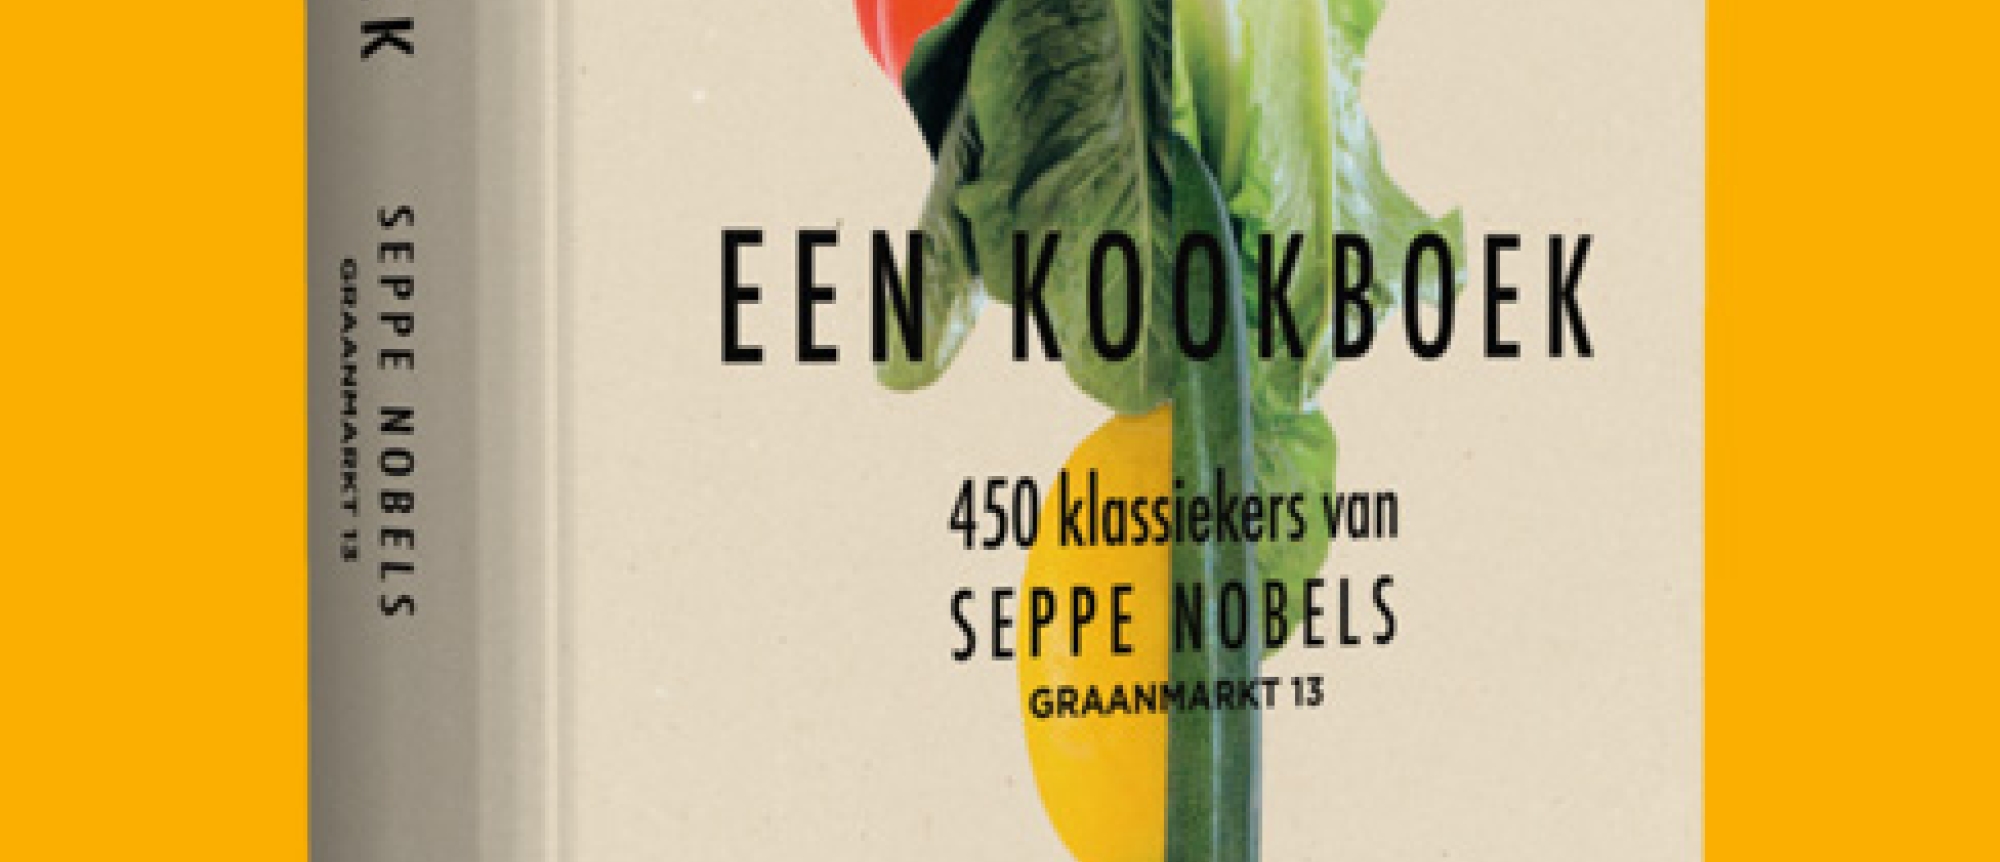 ‘Een Kookboek’ van Vlaming Seppe Nobels uitgeroepen tot Gouden Kookboek 2021